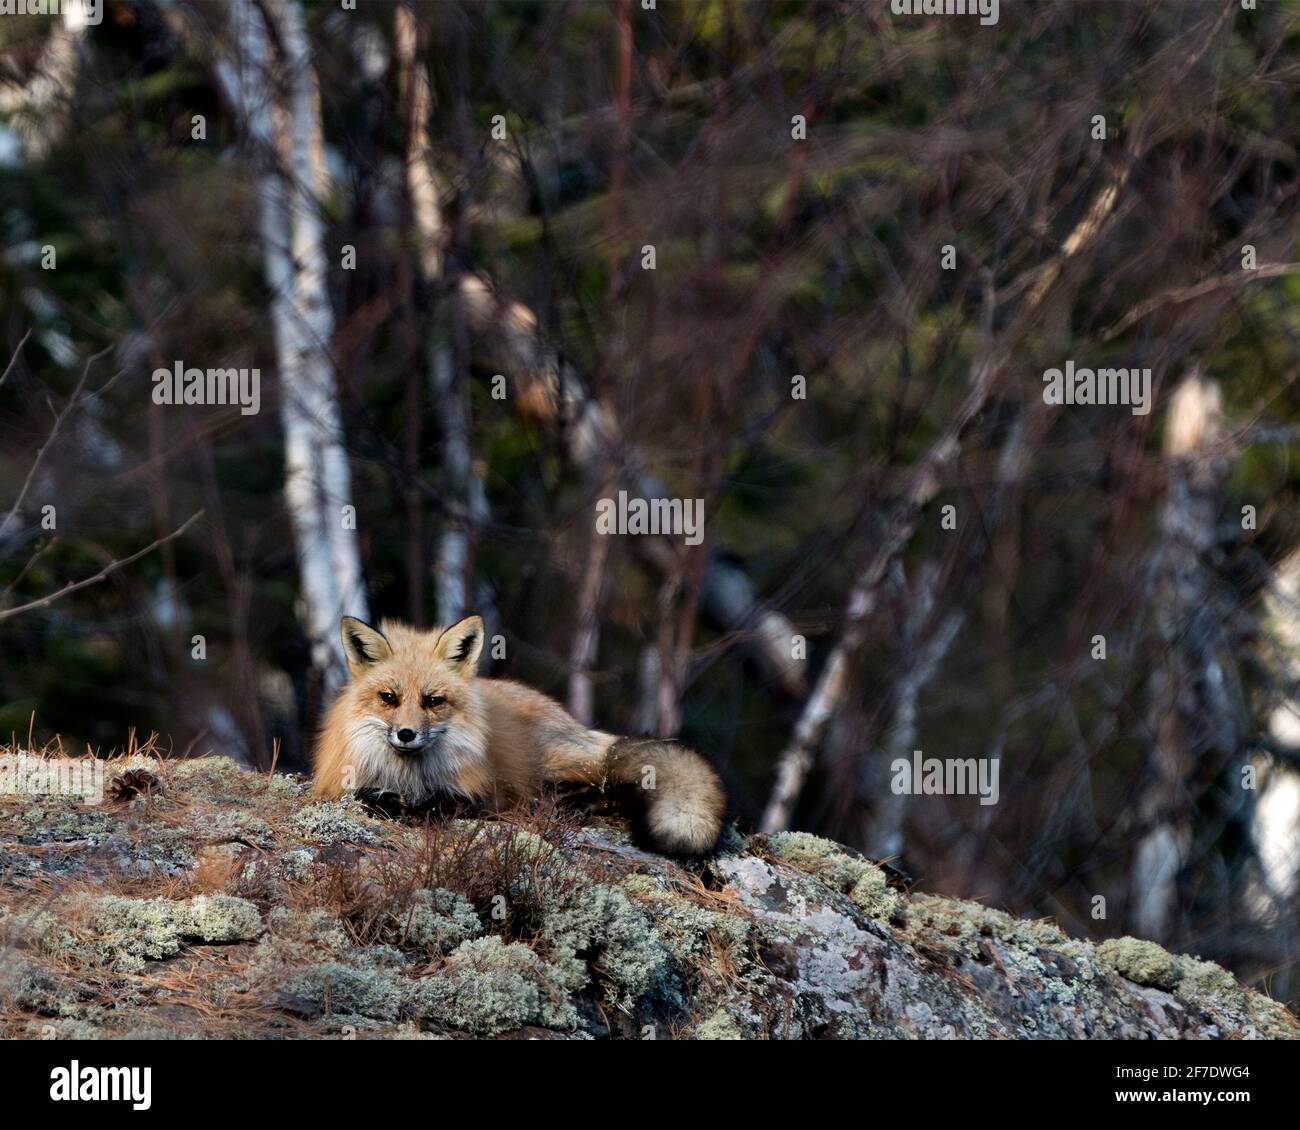 Red Fox adagiato su una roccia muschio con sfondo sfocato nel suo ambiente e habitat che mostra coda di volpe, pelliccia. Immagine FOX. Immagine. Verticale. Foto. Foto Stock